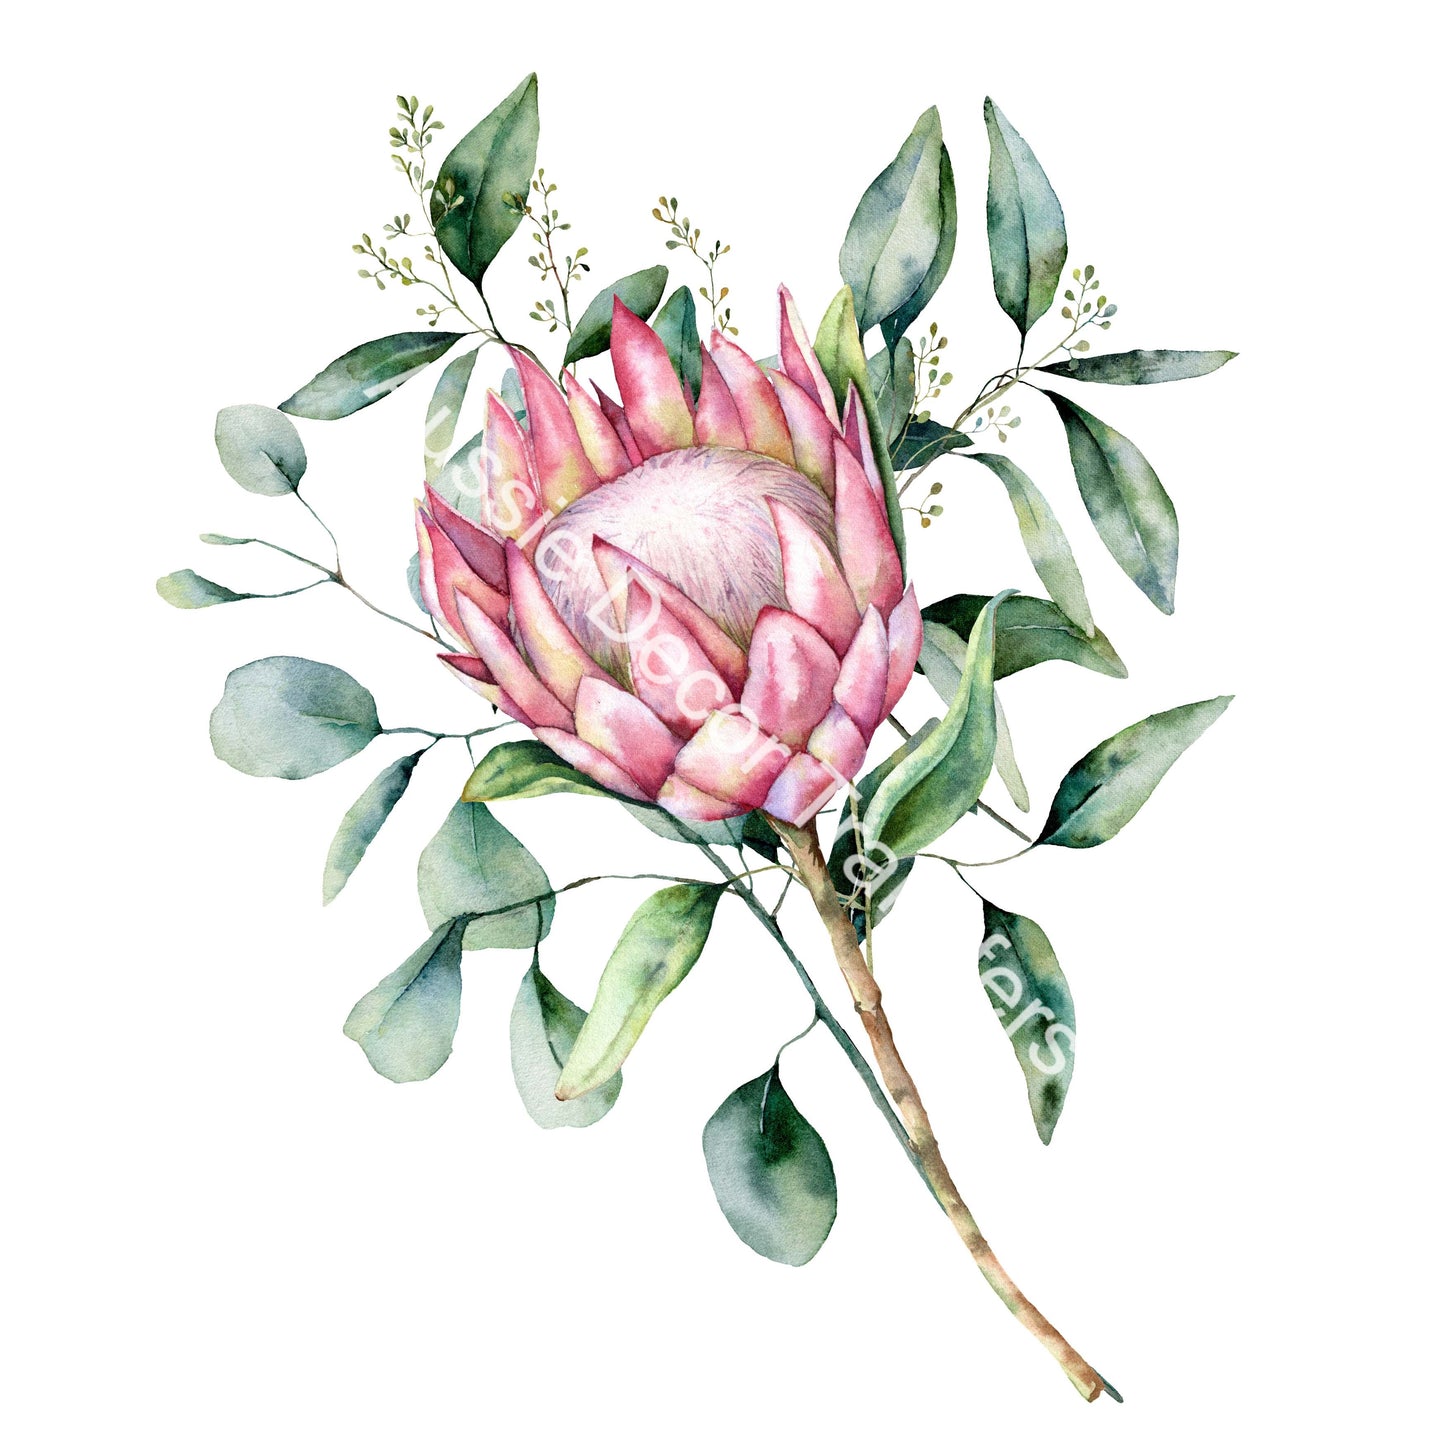 Australian Wildflowers II - Proteas - Aussie Dry Rub Transfer